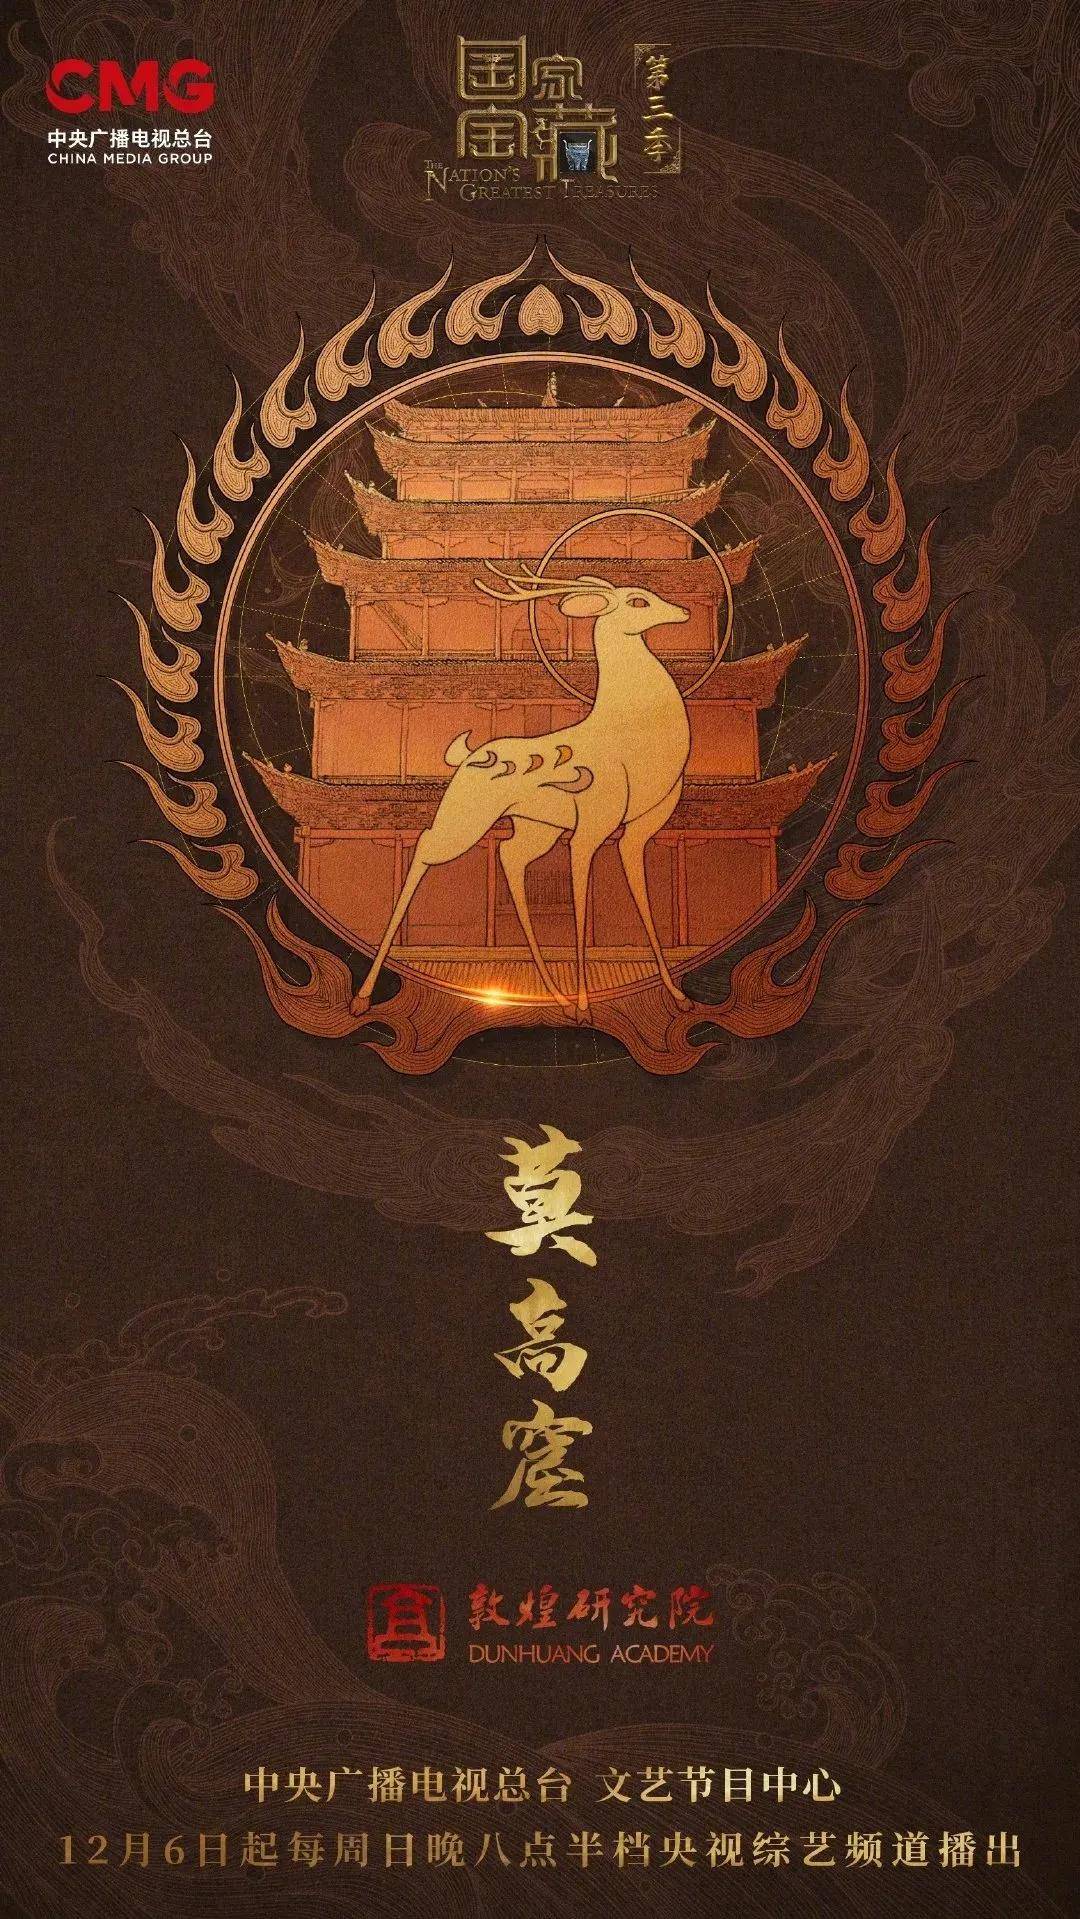 3300年安阳殷墟 视觉海报选取了九座历史文化遗产为主元素,把代表